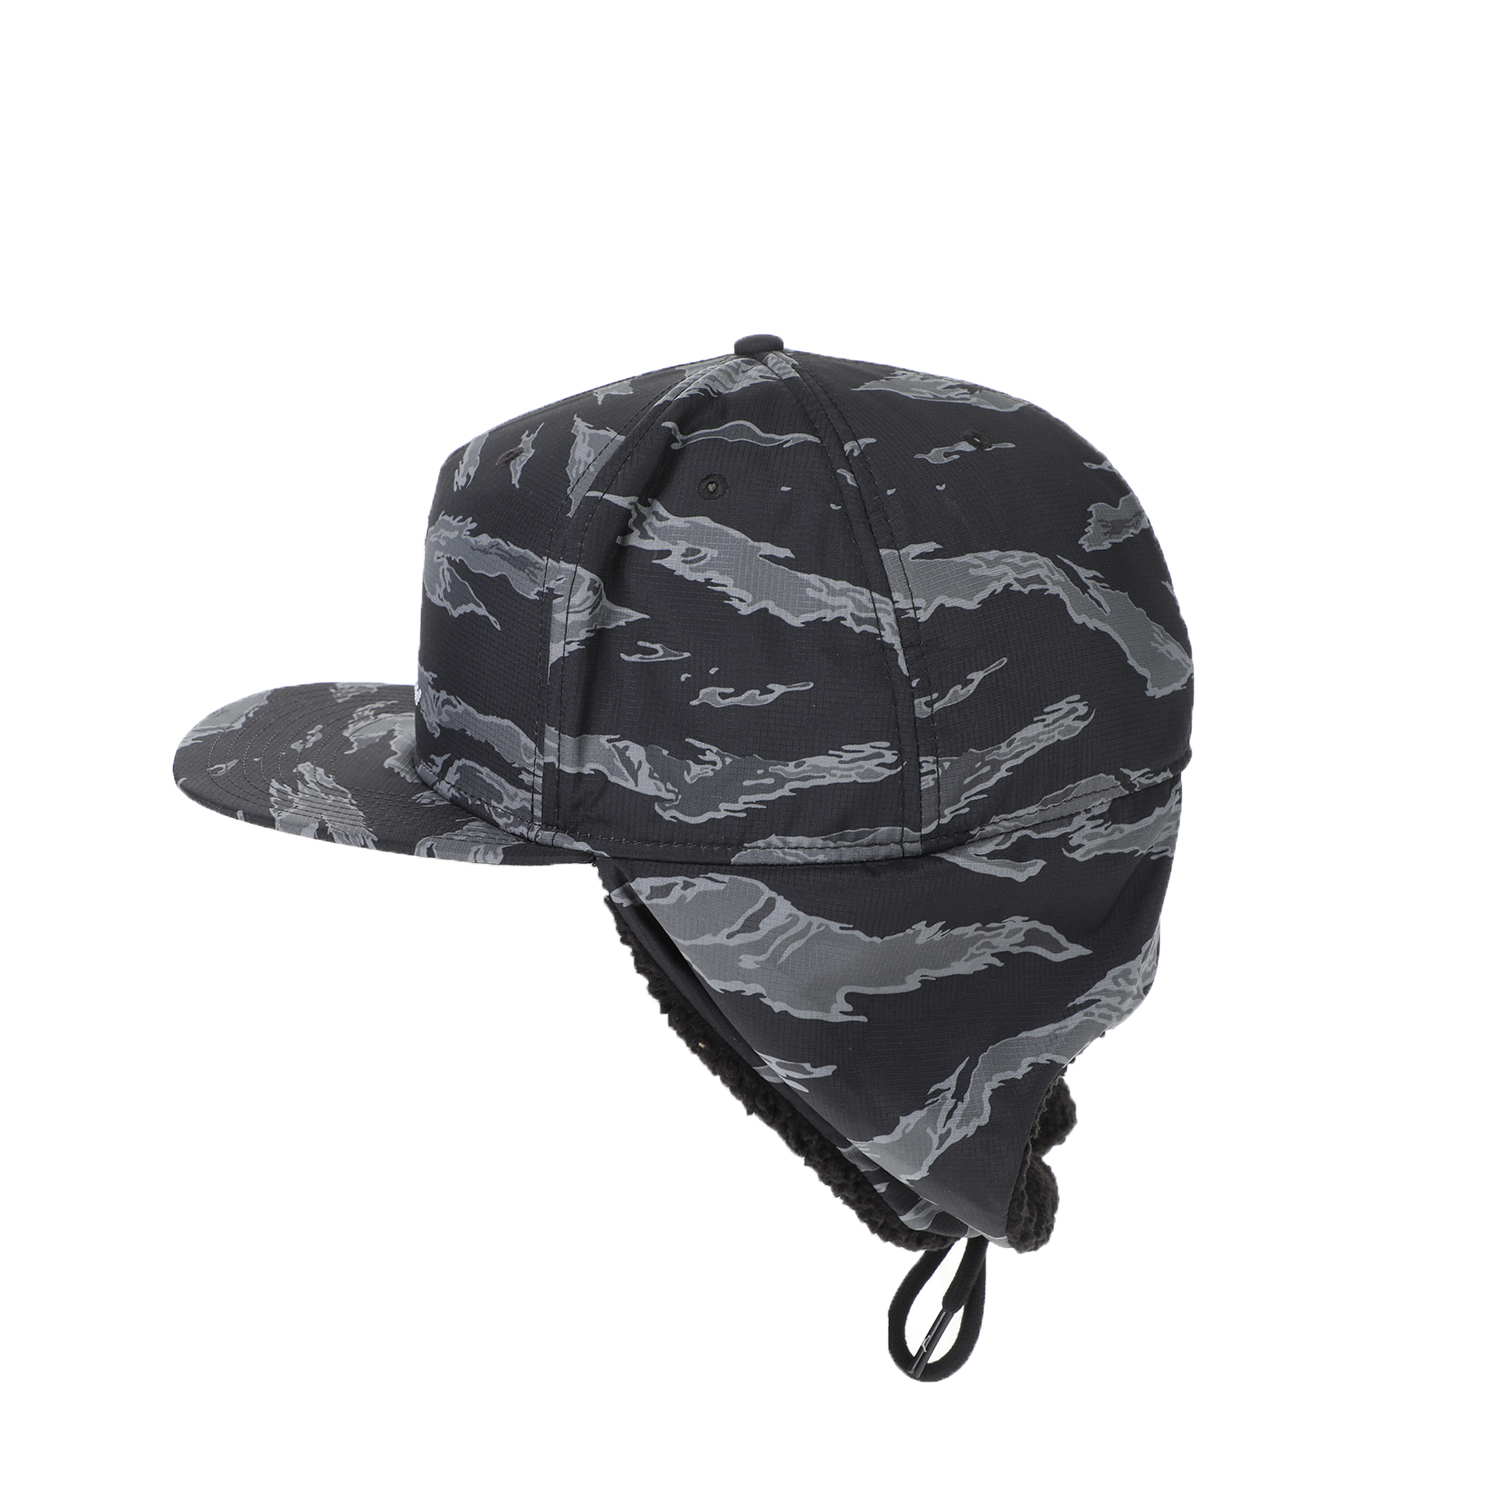 Γυναικεία/Αξεσουάρ/Καπέλα/Αθλητικά NIKE - Unisex καπέλο NIKE JORDAN PRO SHIELD μαύρο